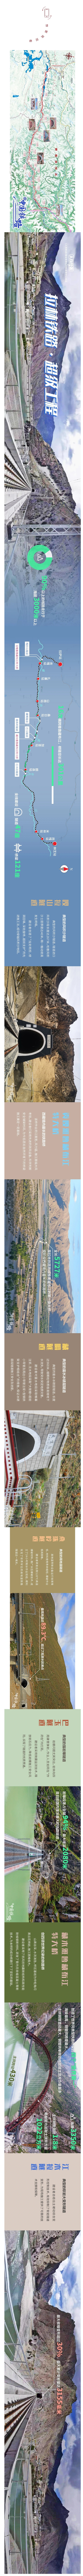 坐火车过雅鲁藏布江，能看到哪些超级工程？